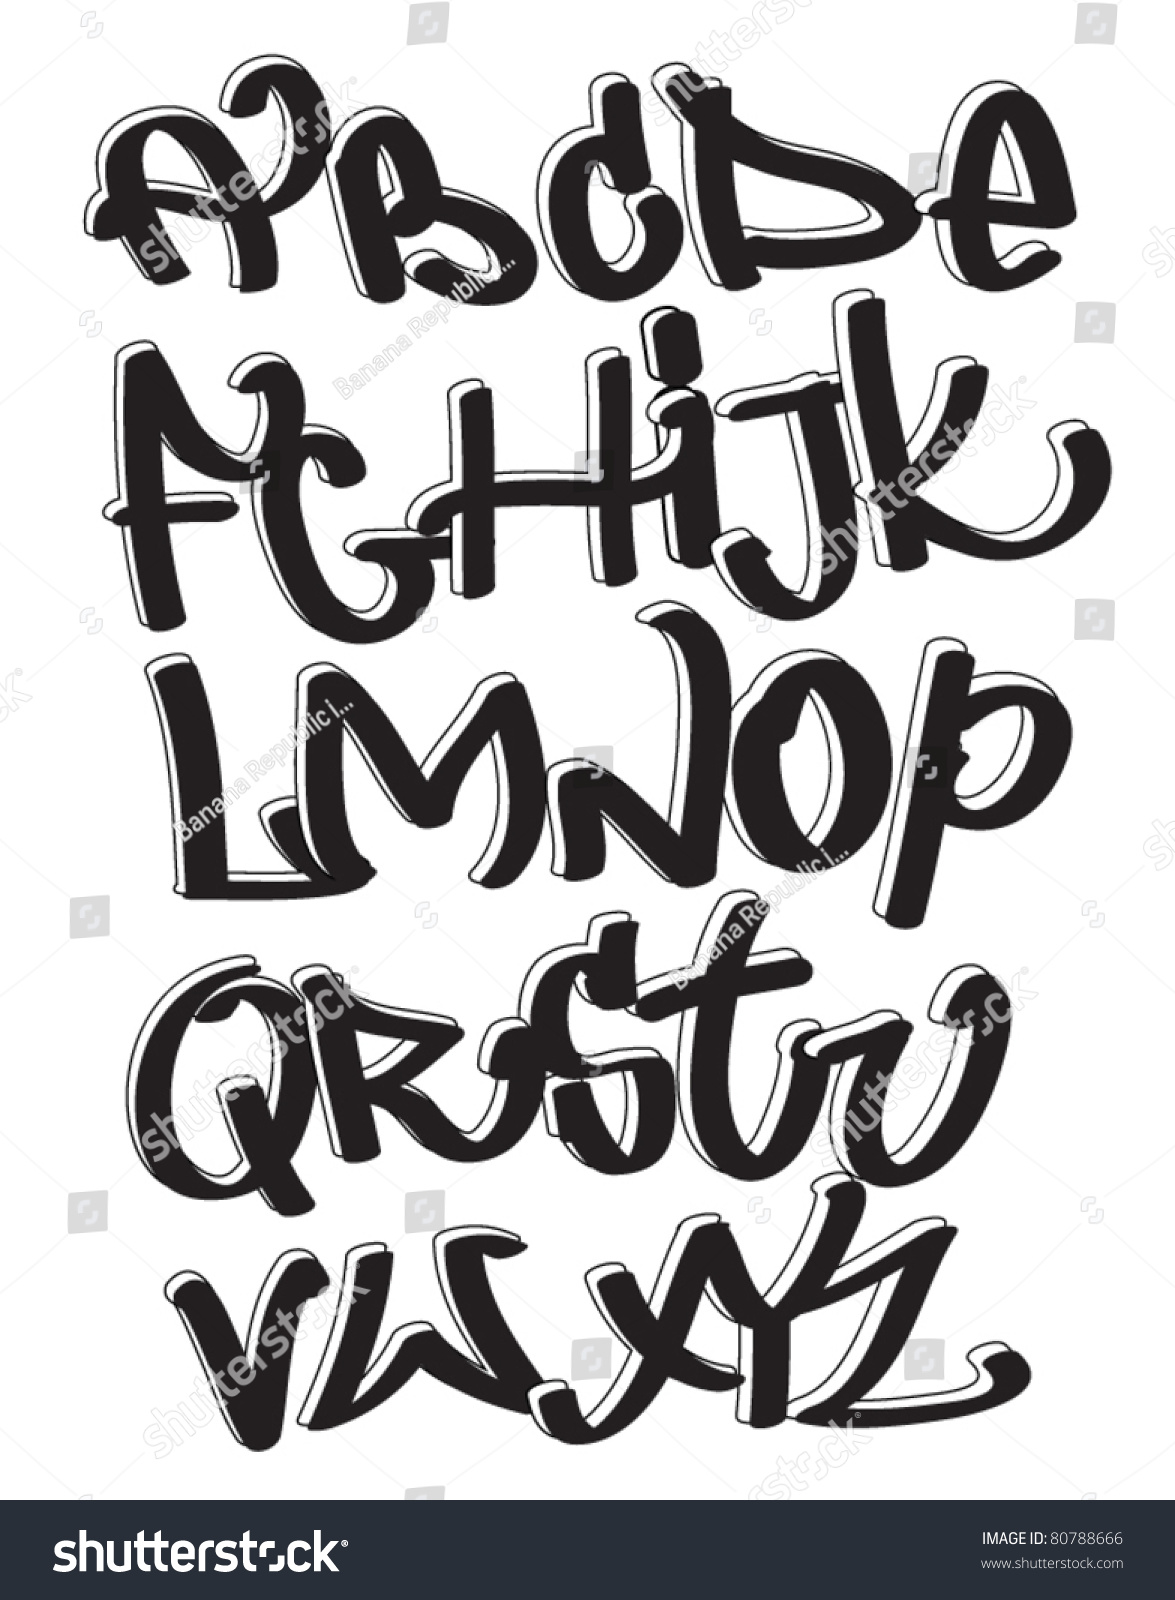 Graffiti Font Alphabet Urban Art Abc Stock Vector 80788666 - Shutterstock